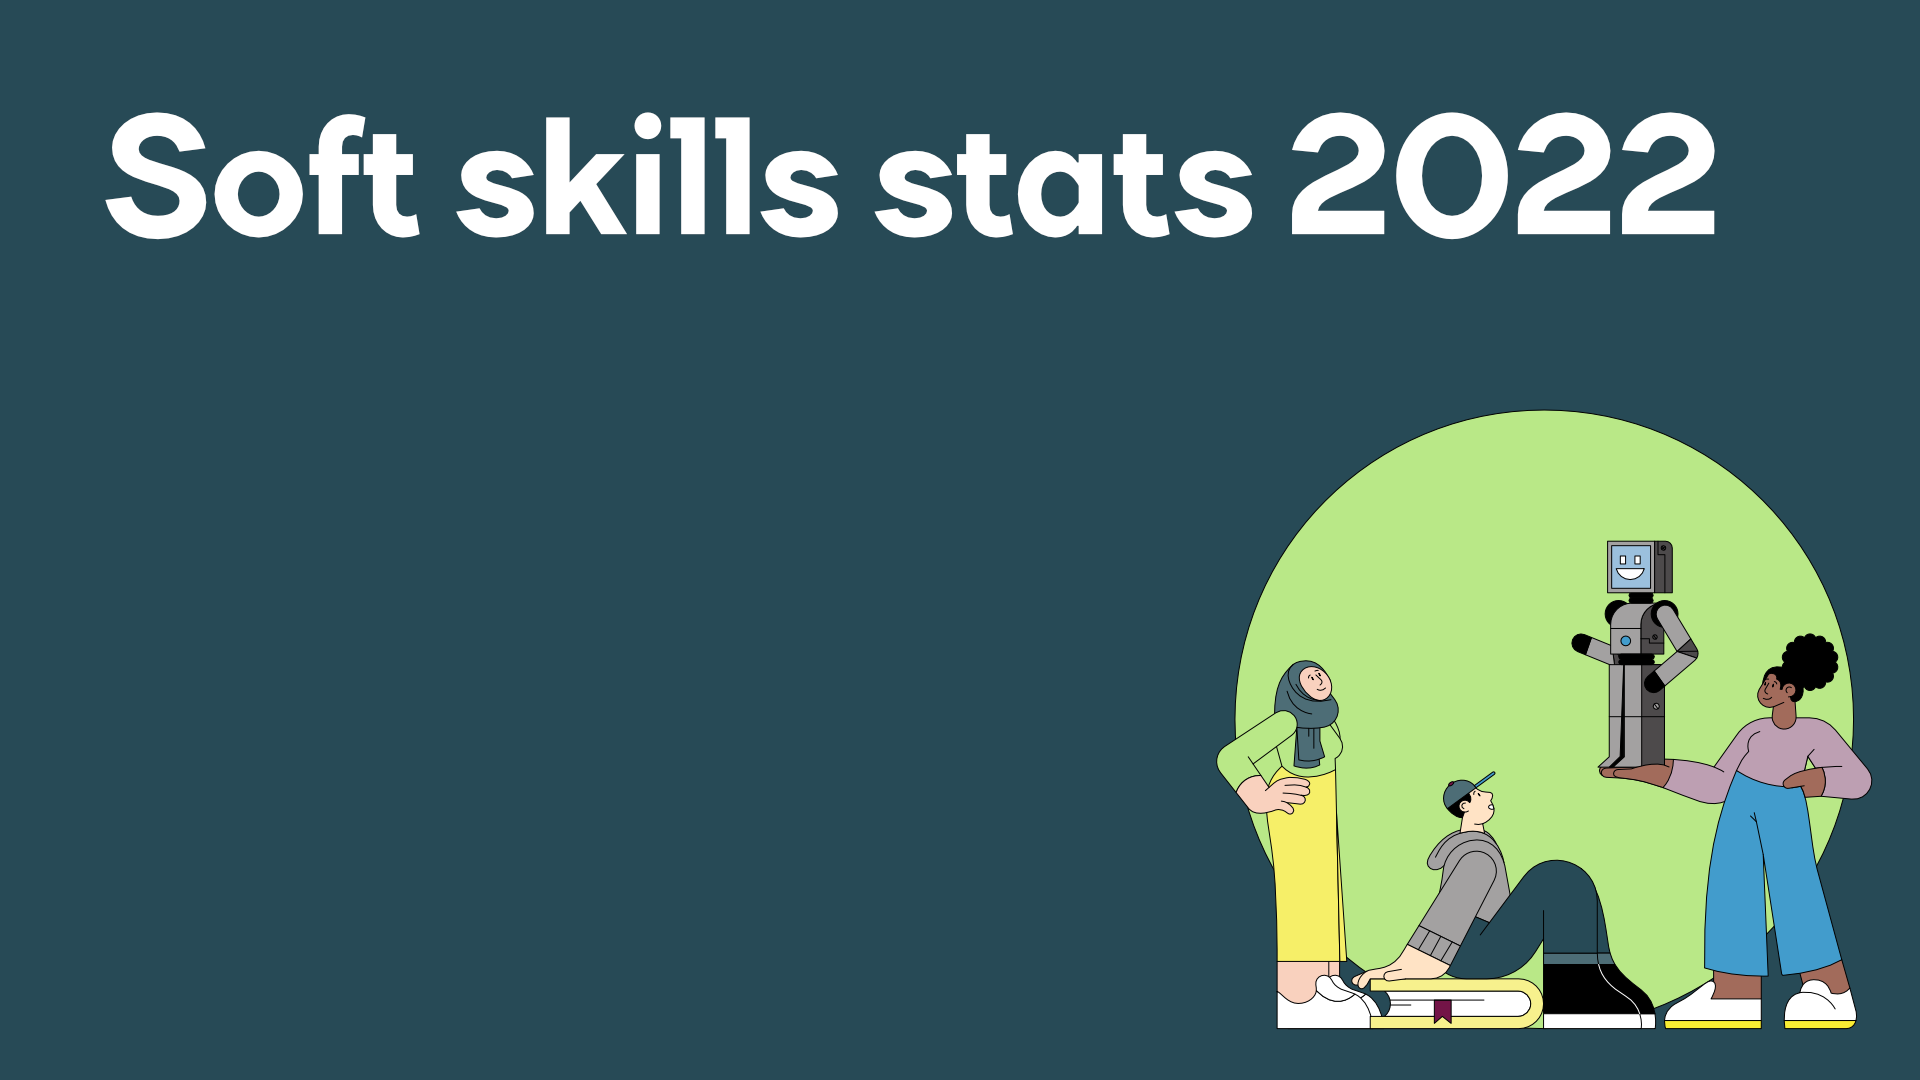 Soft skills stats 2022